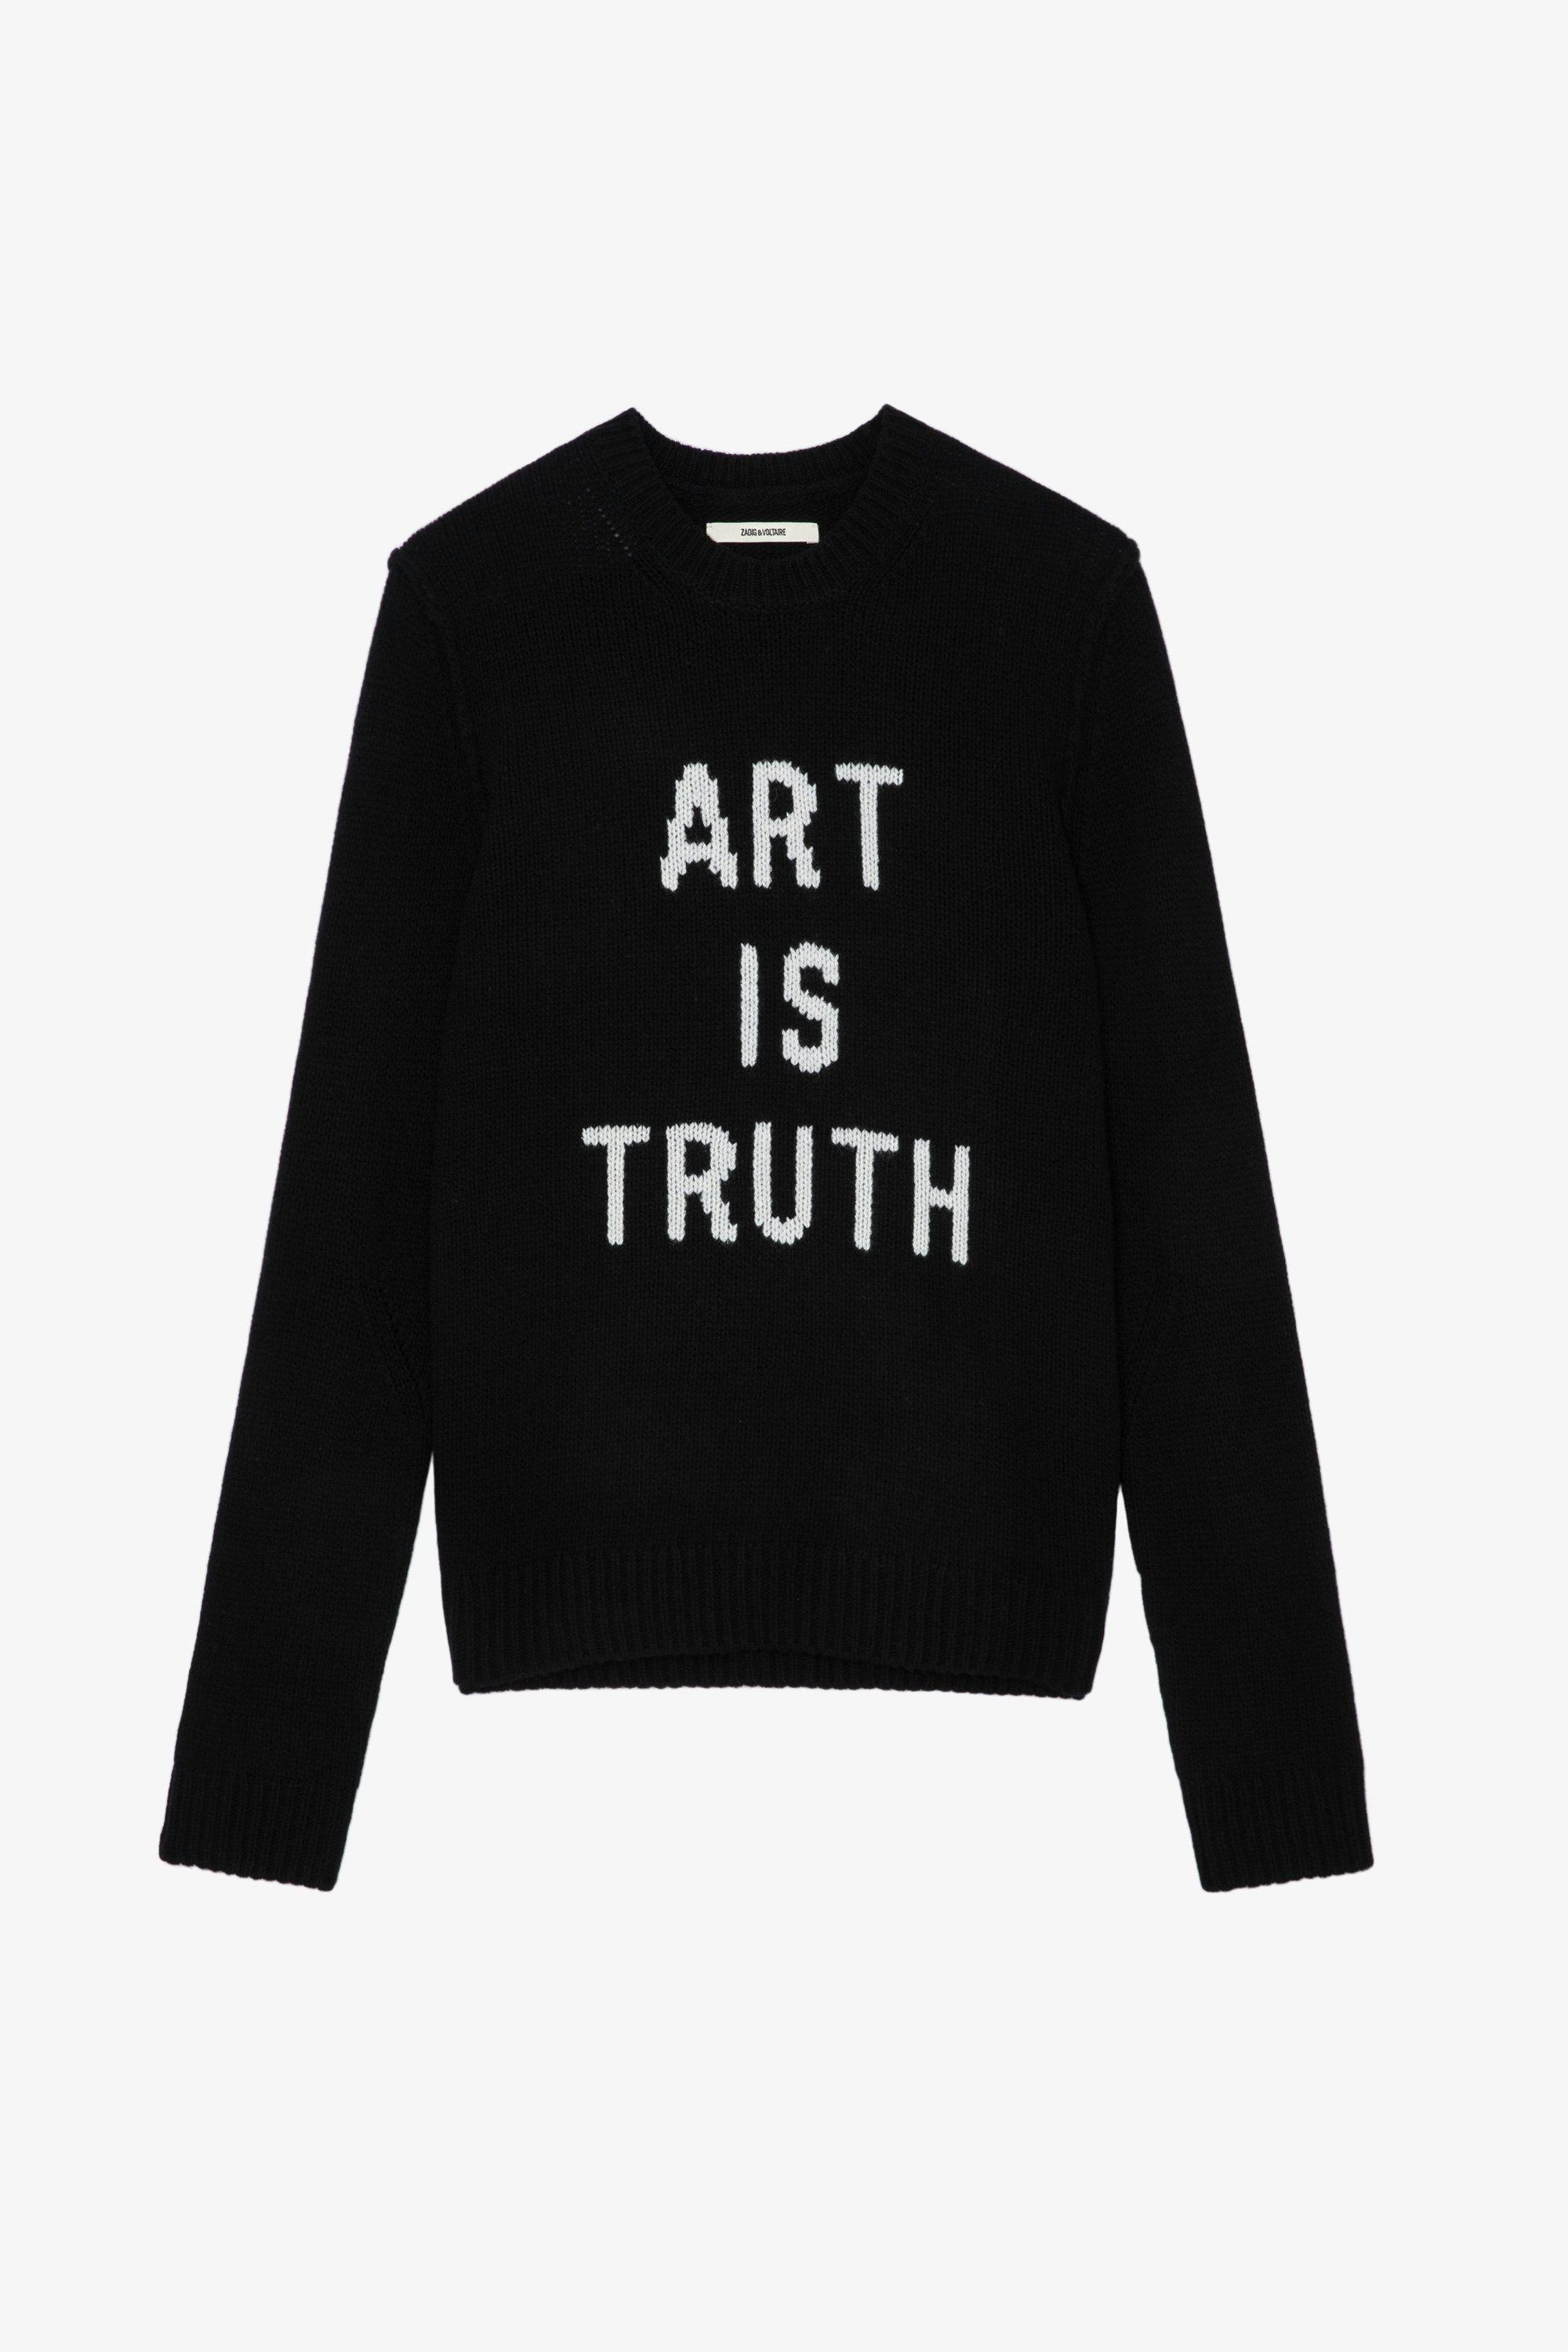 Art is Truth Kennedy Jumper Men’s merino wool ‘Art is truth’ jumper